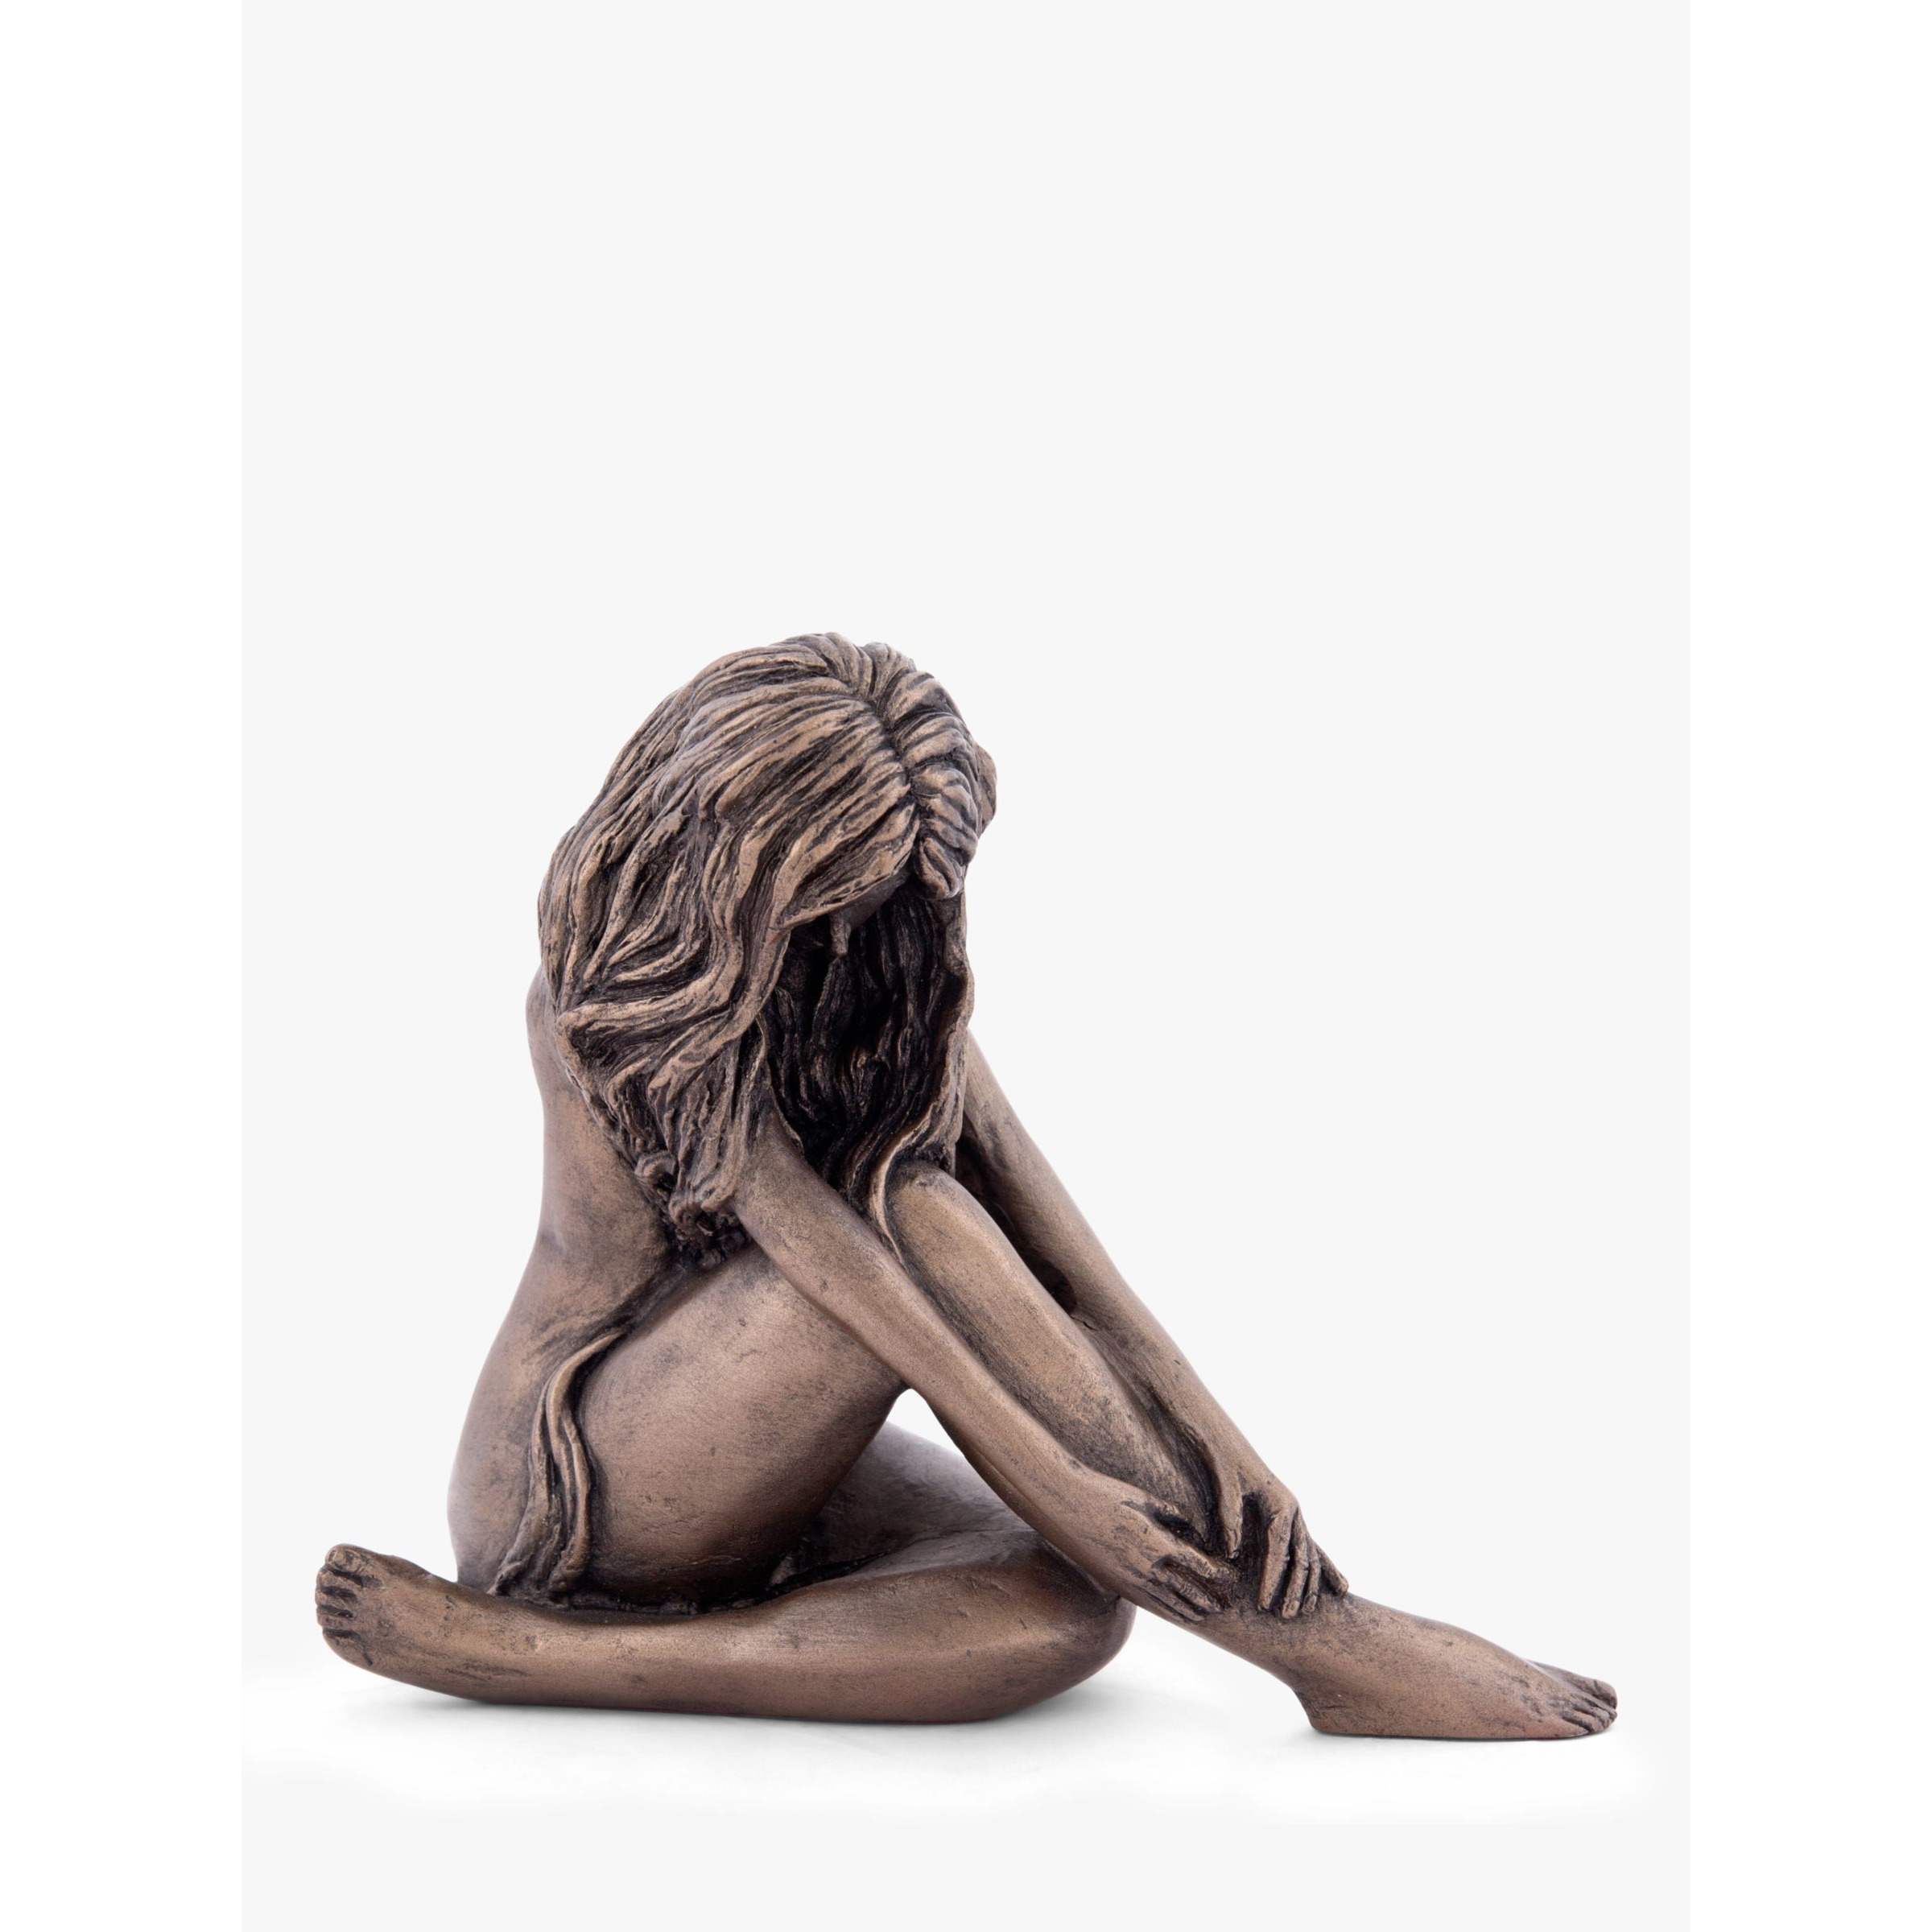 Frith Sculpture Sara Figurine by Bryan Collins, Bronze